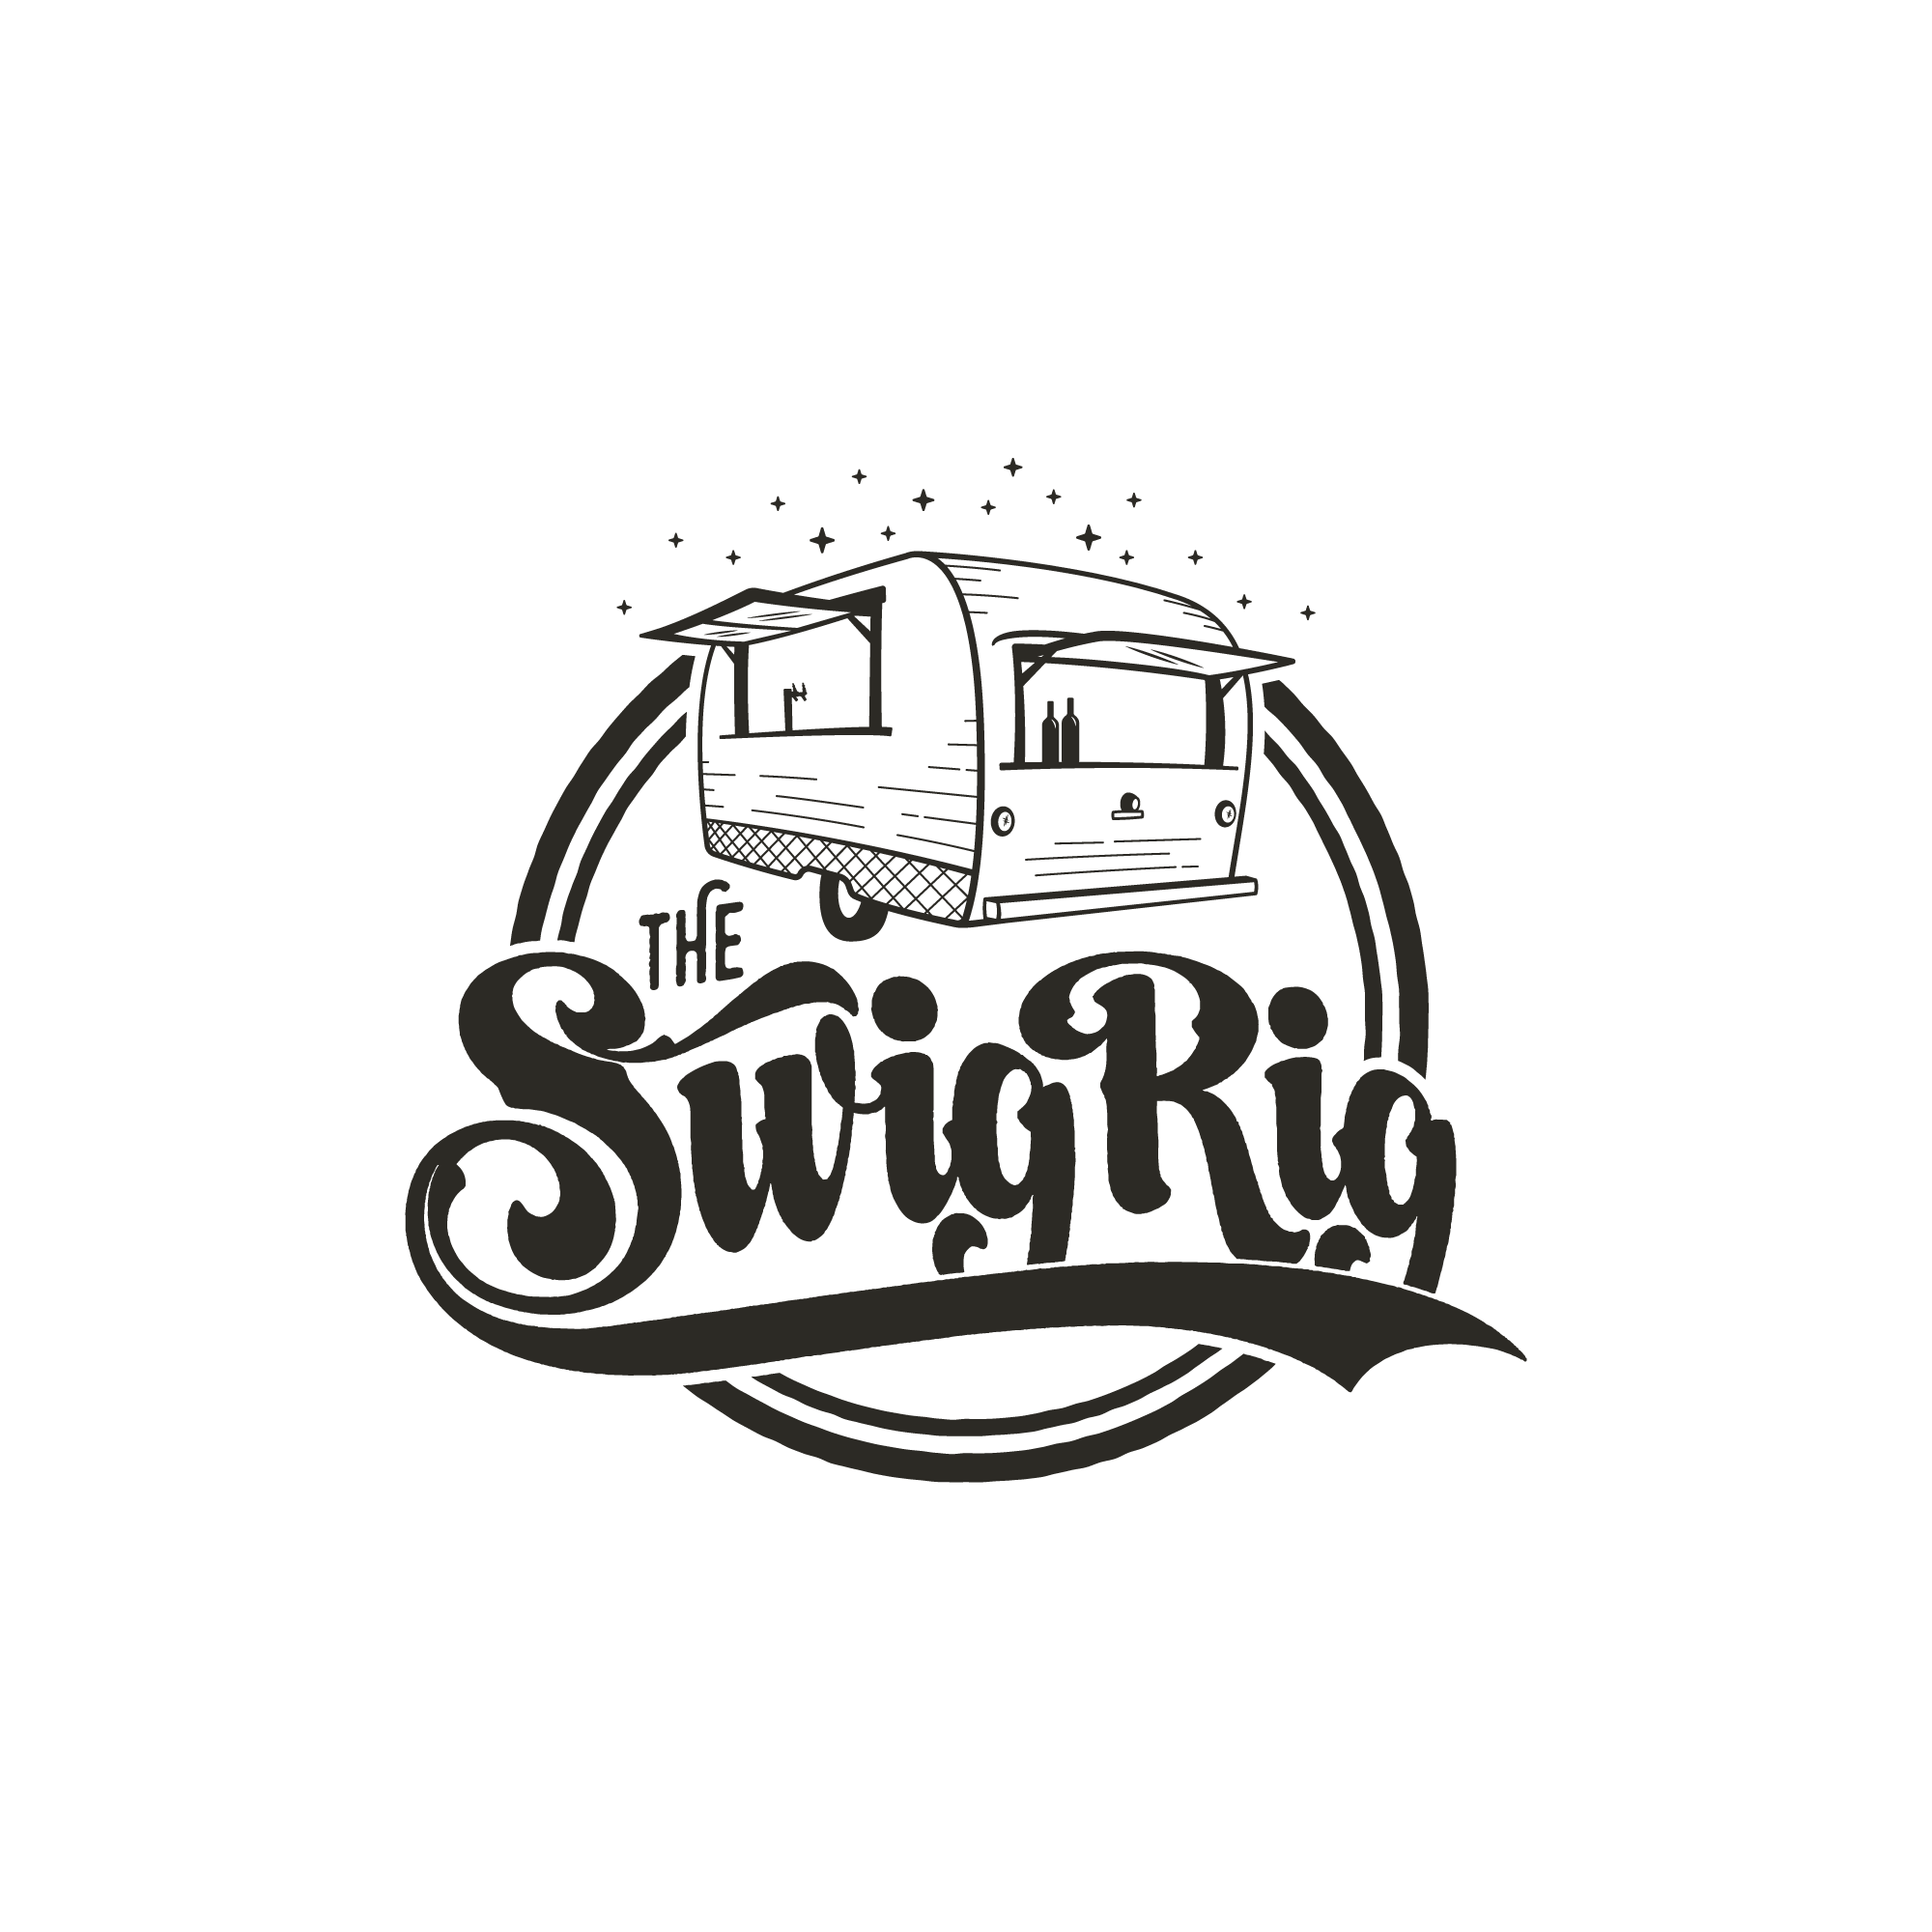 The Swig Rig | Wedding and Event Rental Services | Vintage Mobile Bar | Portland - Central Oregon